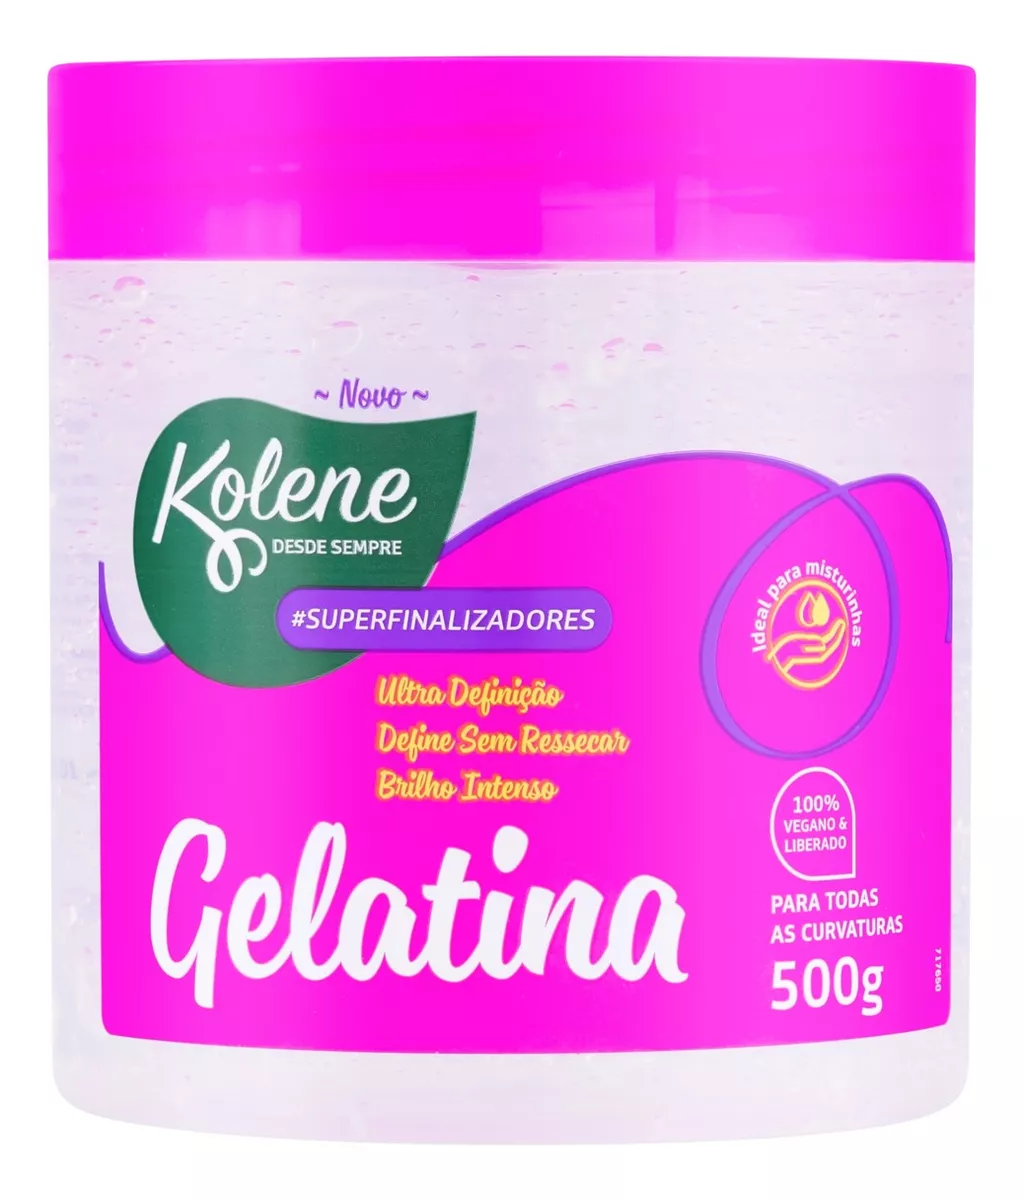 Primeira imagem para pesquisa de gelatina